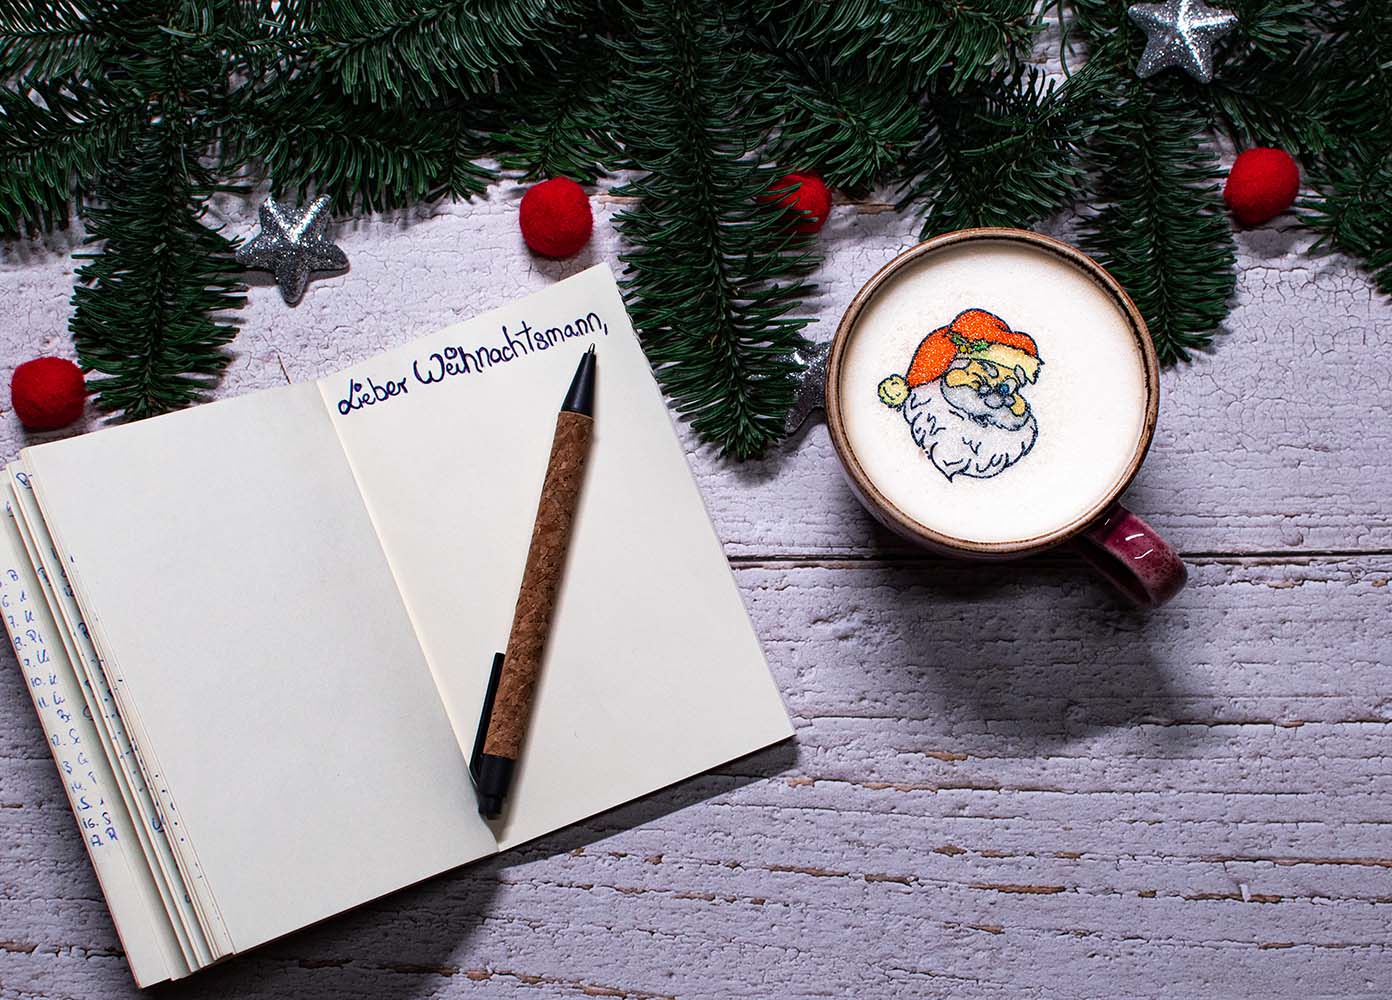 Notizbuch auf dem lieber Weihnachtsmann steht. Im Buch liegt ein Kugelschreiber und oben im Bild sind Tannenzweige mit Weihnachtskugeln. In einer roten Kaffeetasse ist Capuccino und Weihnachtsmann Sticker